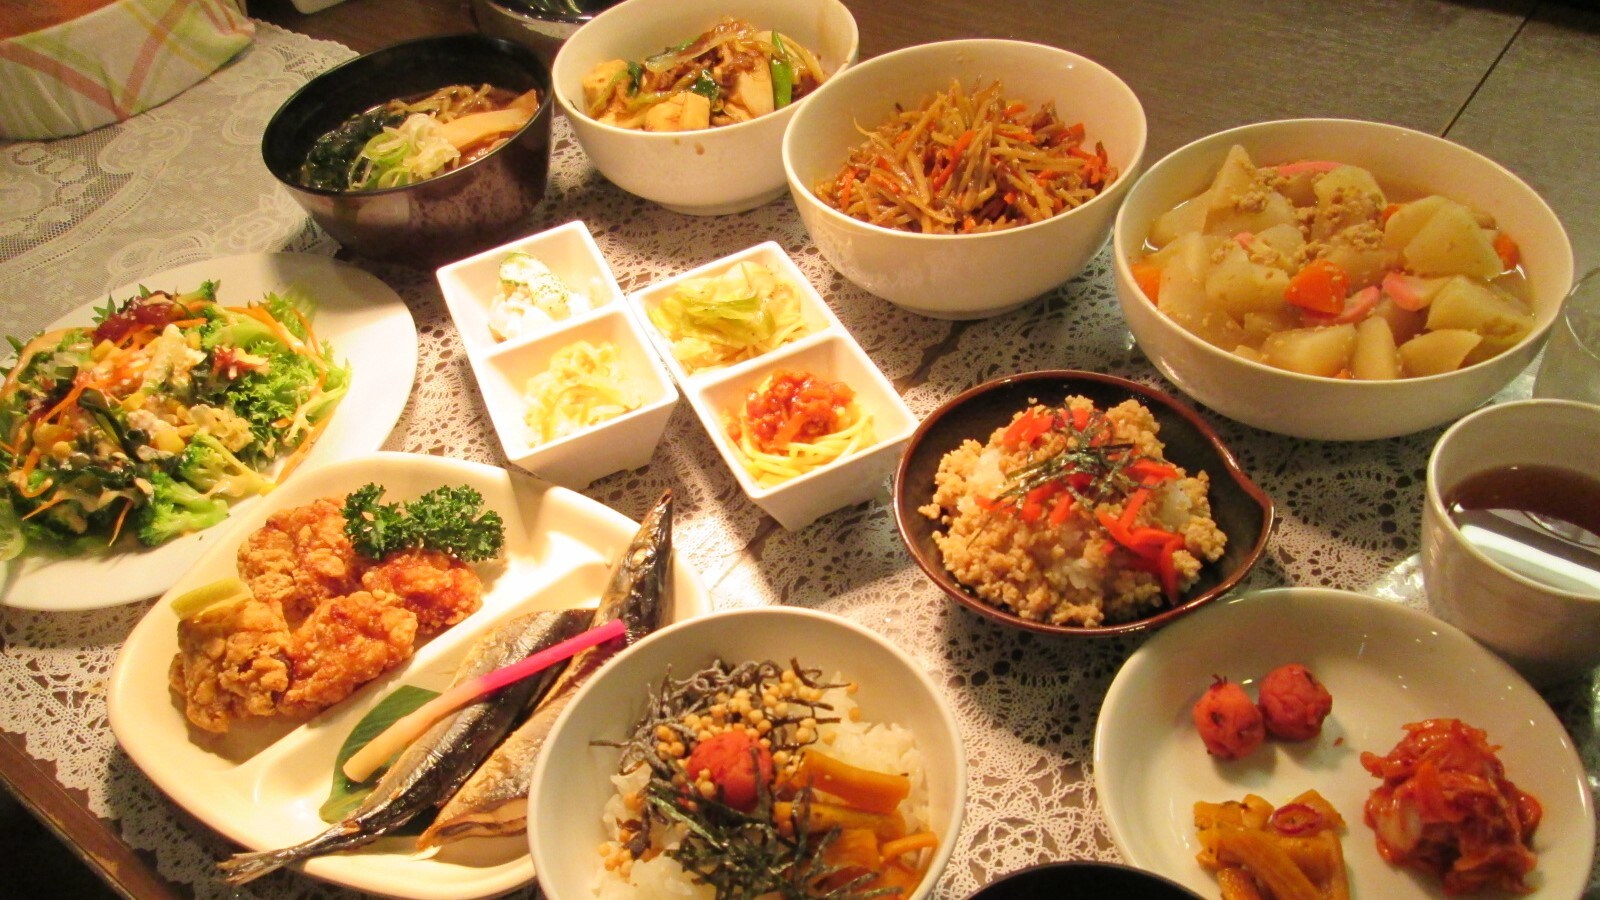 Restoran makan malam "Hanachaya" Contoh prasmanan harian